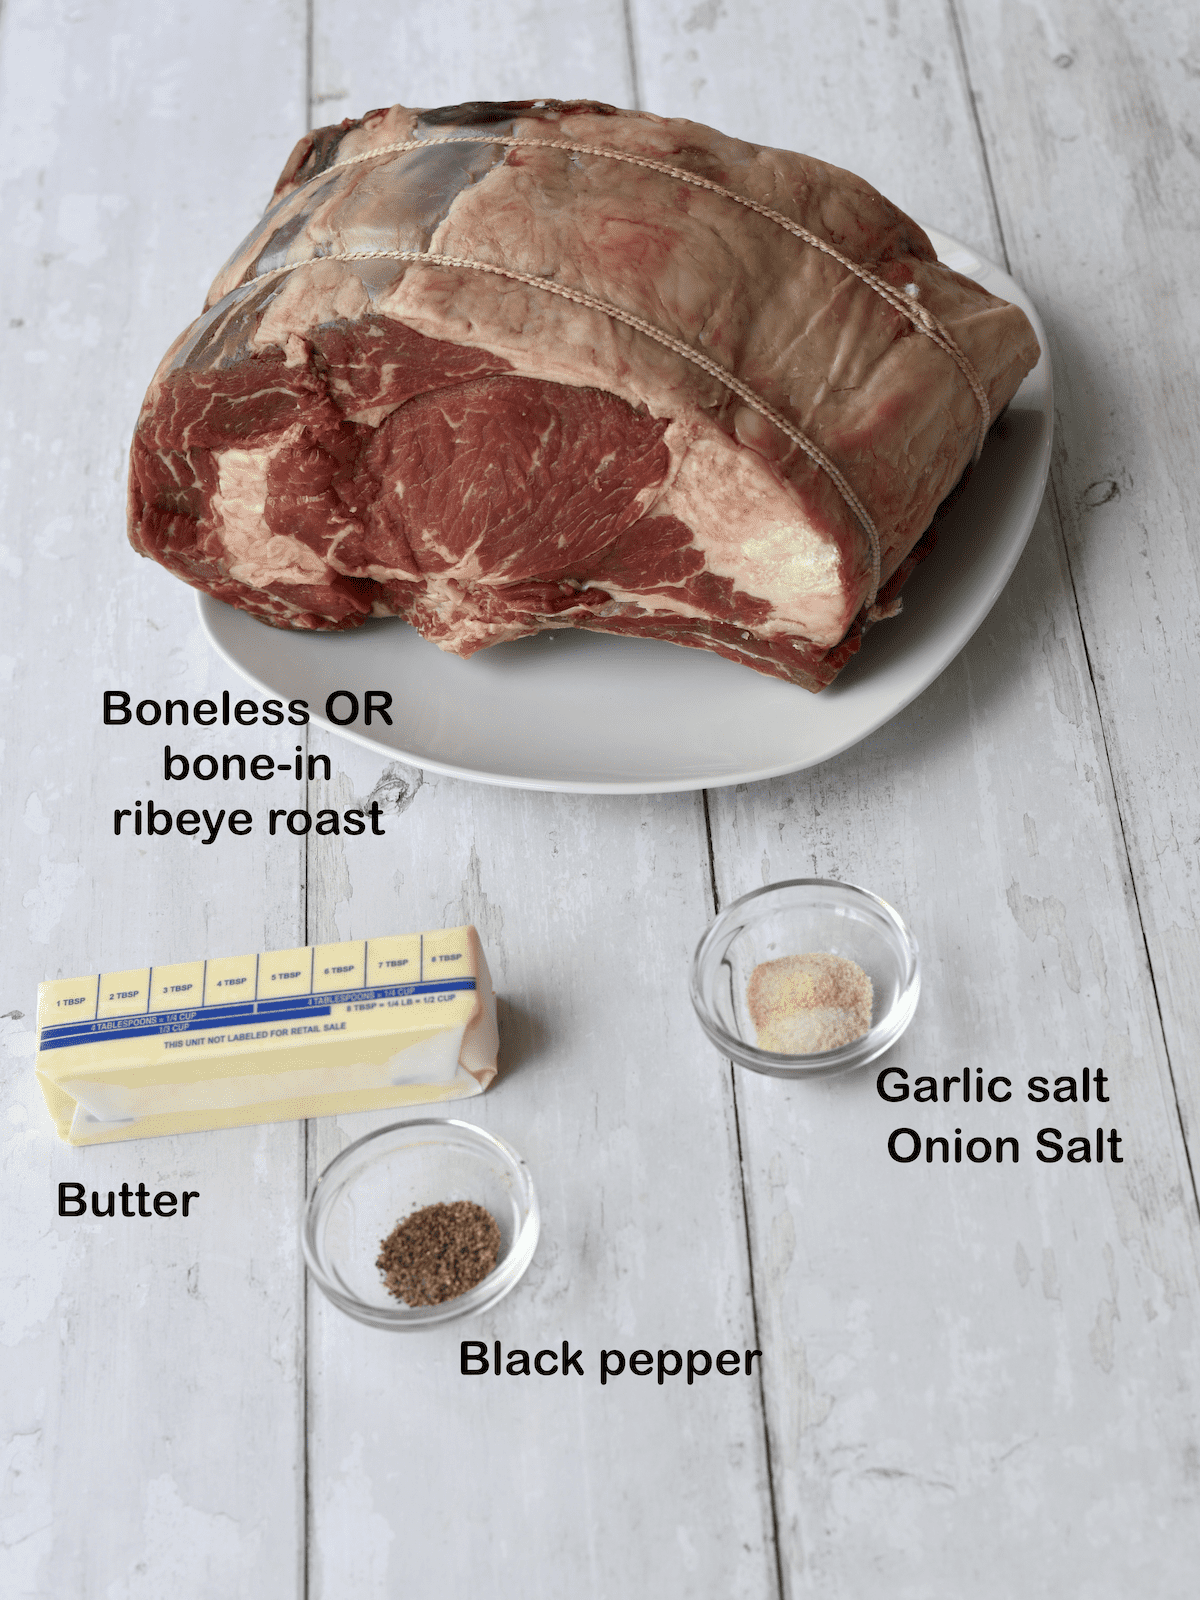 Ingredients for standing ribeye prime rib roast.